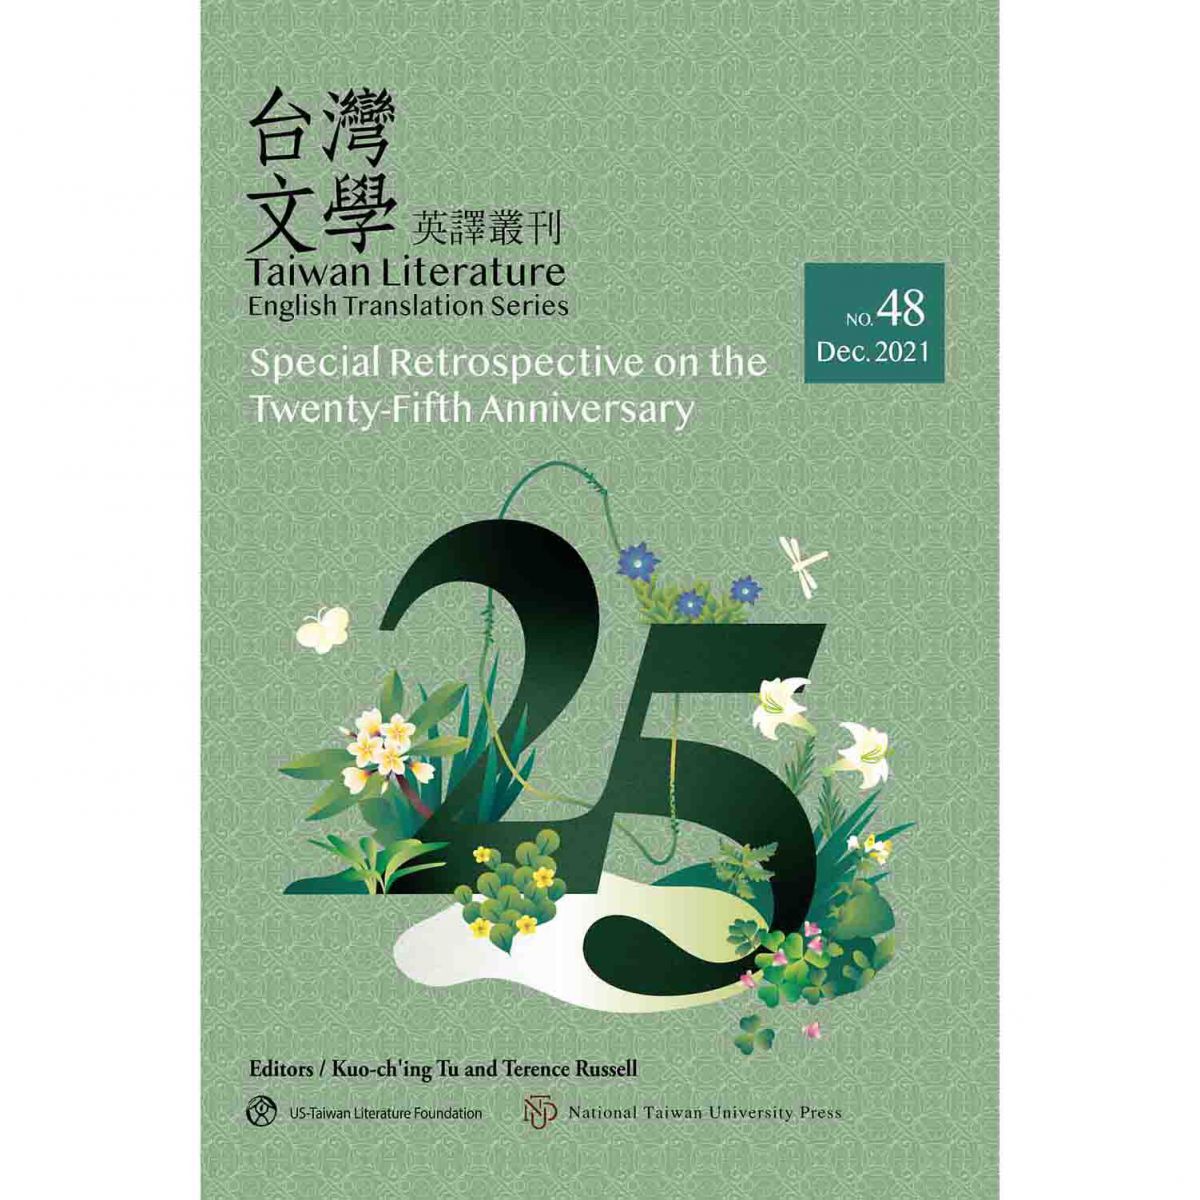 《台灣文學英譯叢刊（No. 48）》25週年回顧專輯出版